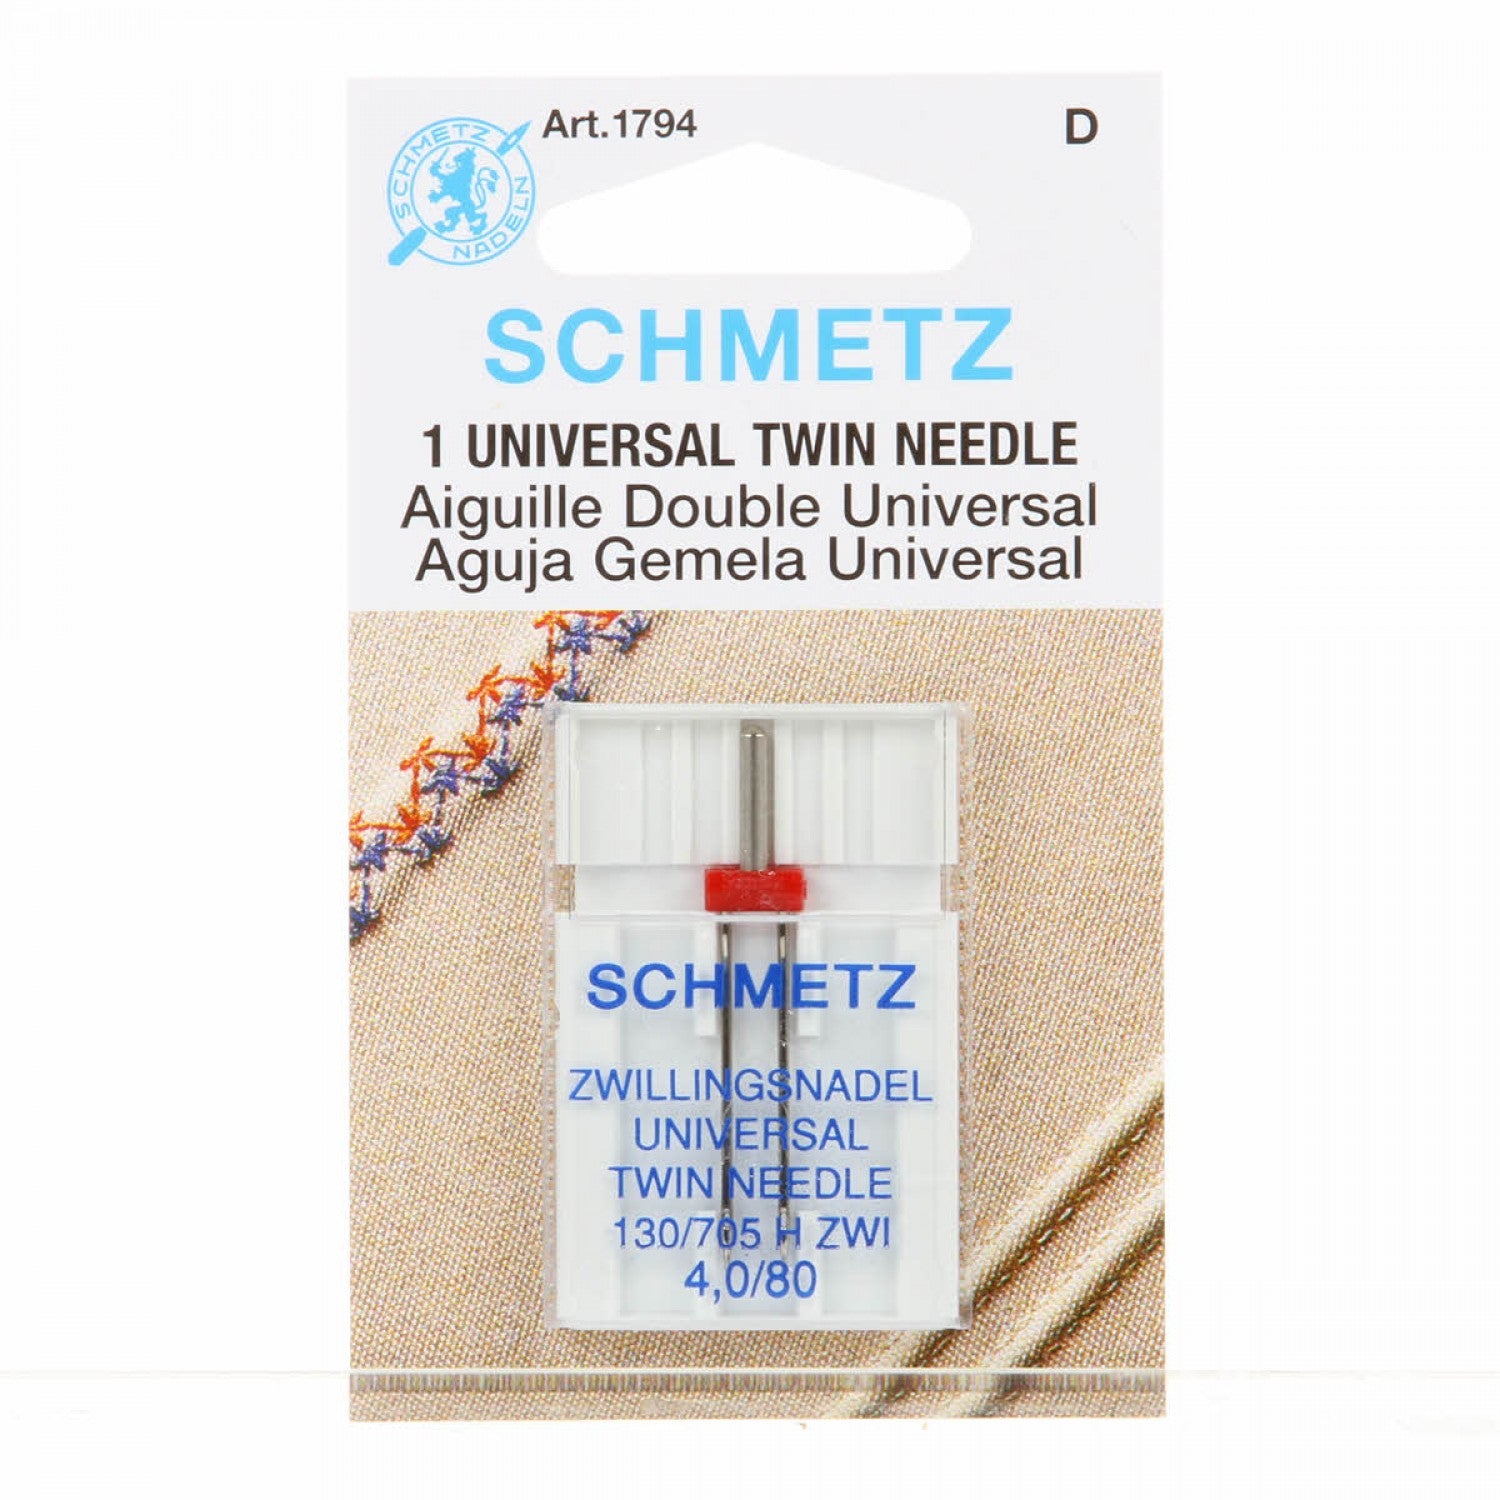 Schmetz Twin Needle - 80/4.0 - 1 Package of 1 Needle